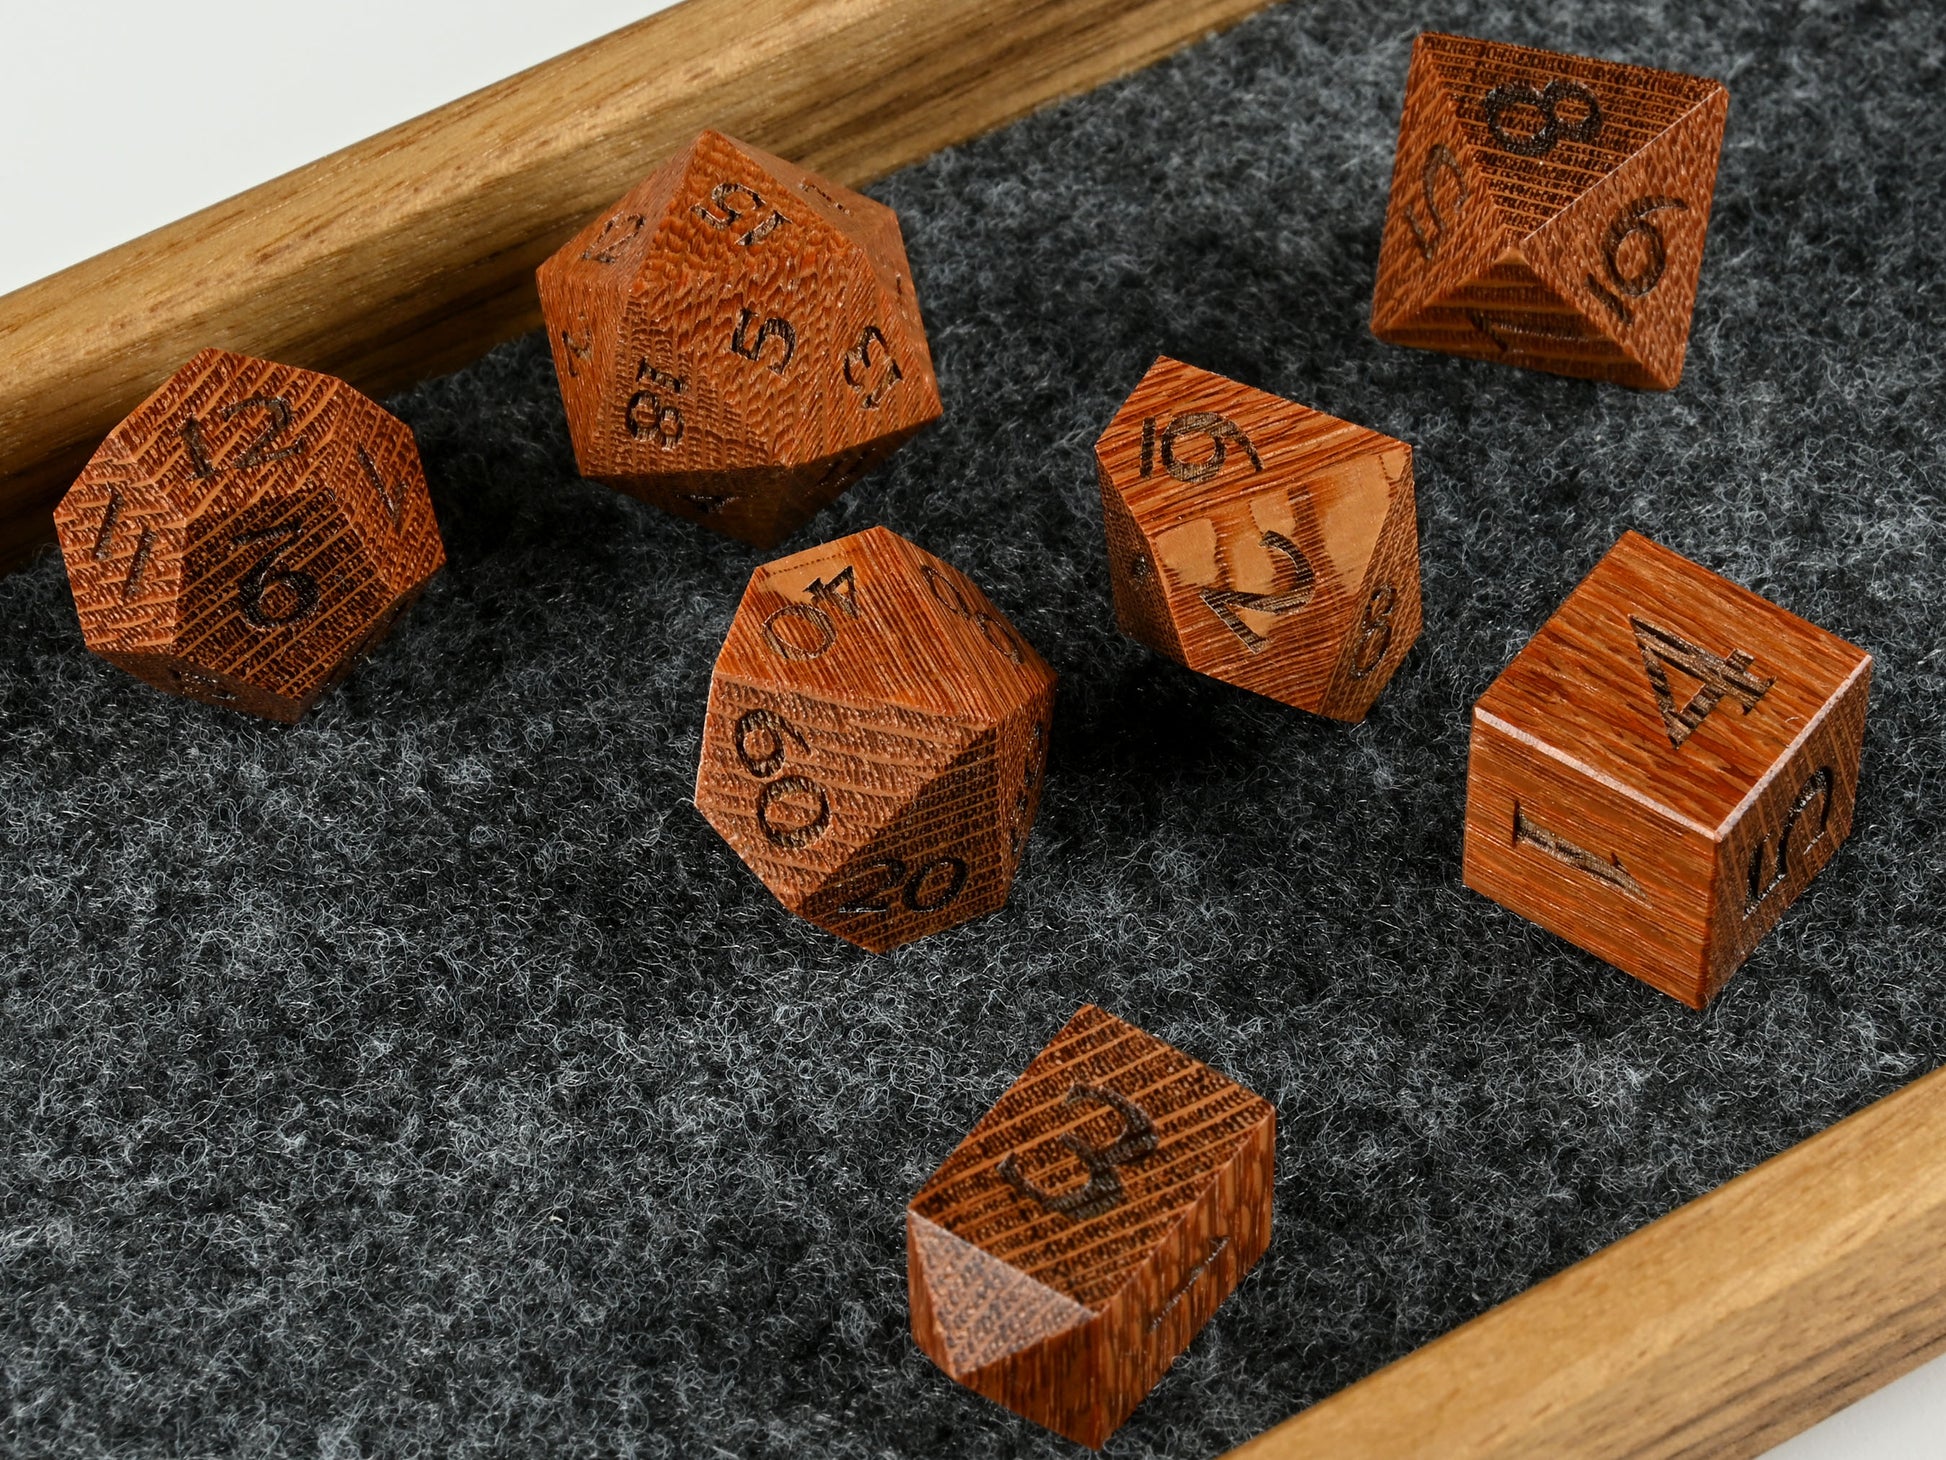 Leopardwood dice set for dnd D&D rpg tabletop gaming